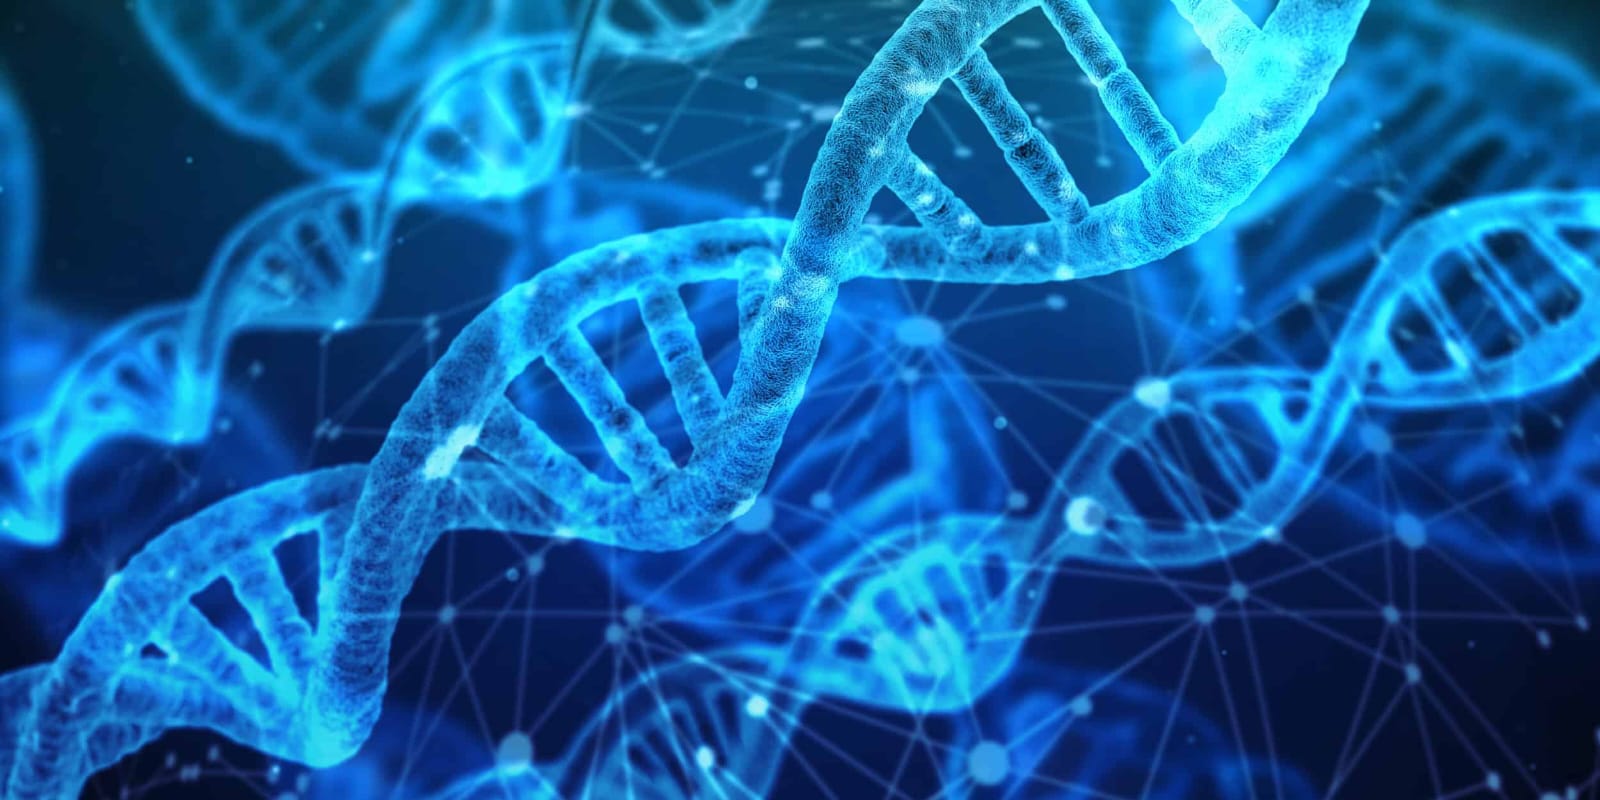 جامعة حلوان الأهلية تطرح برنامج جديد عن "التكنولوجيا الحيوية والهندسة الوراثية"